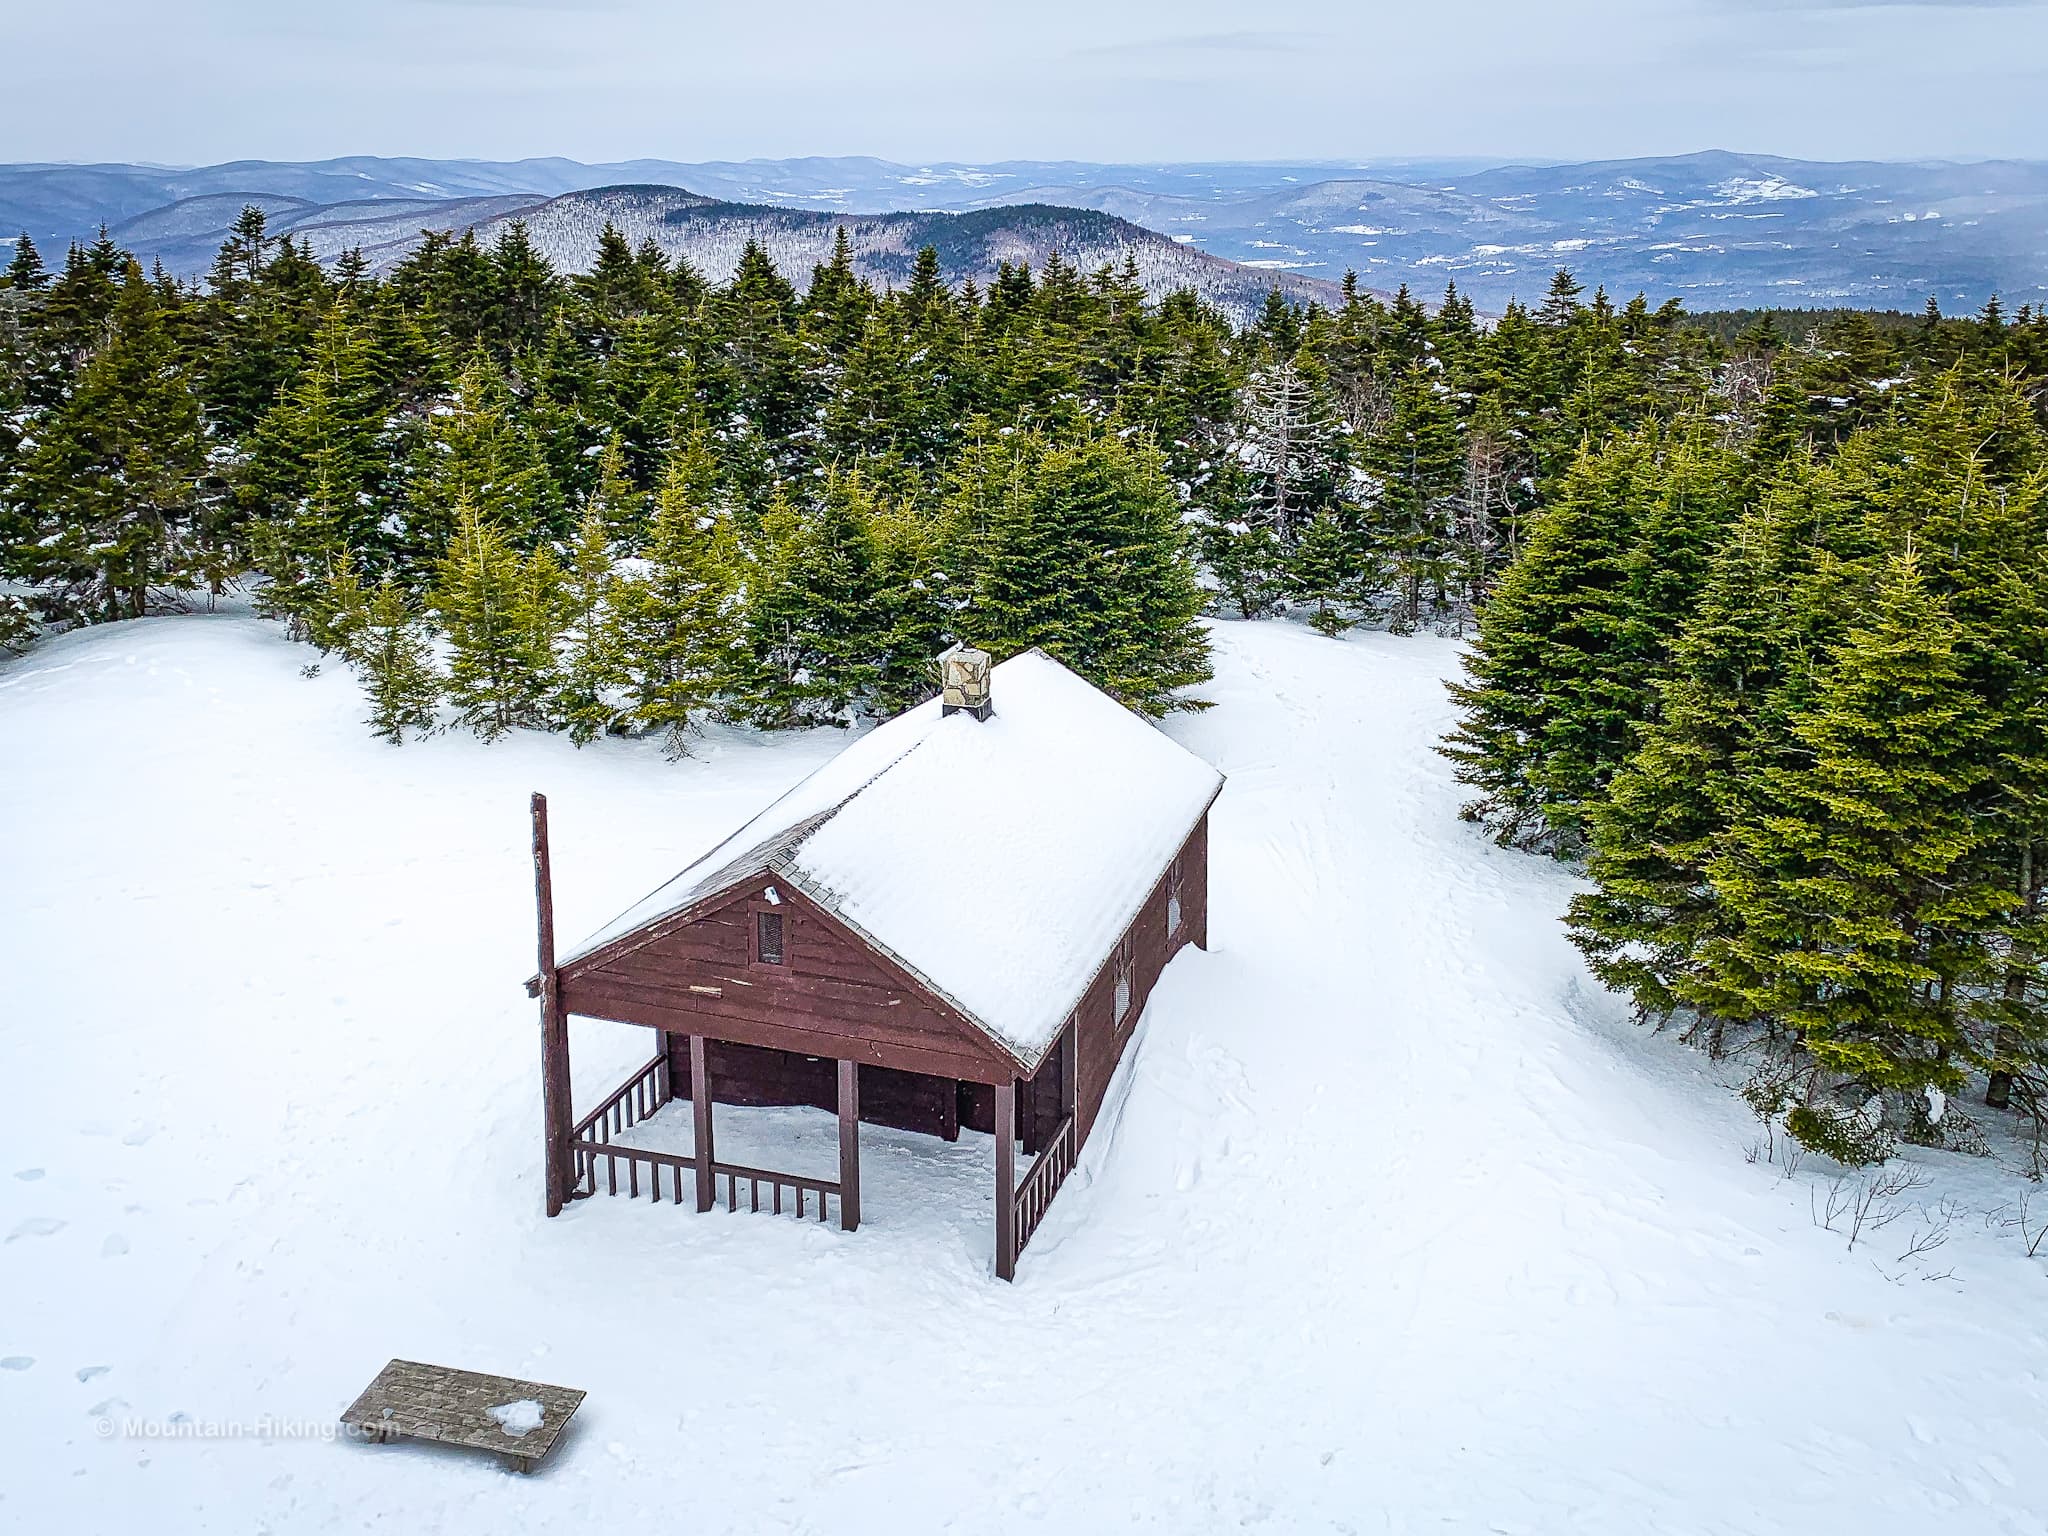 cabin in snow on mountain summit